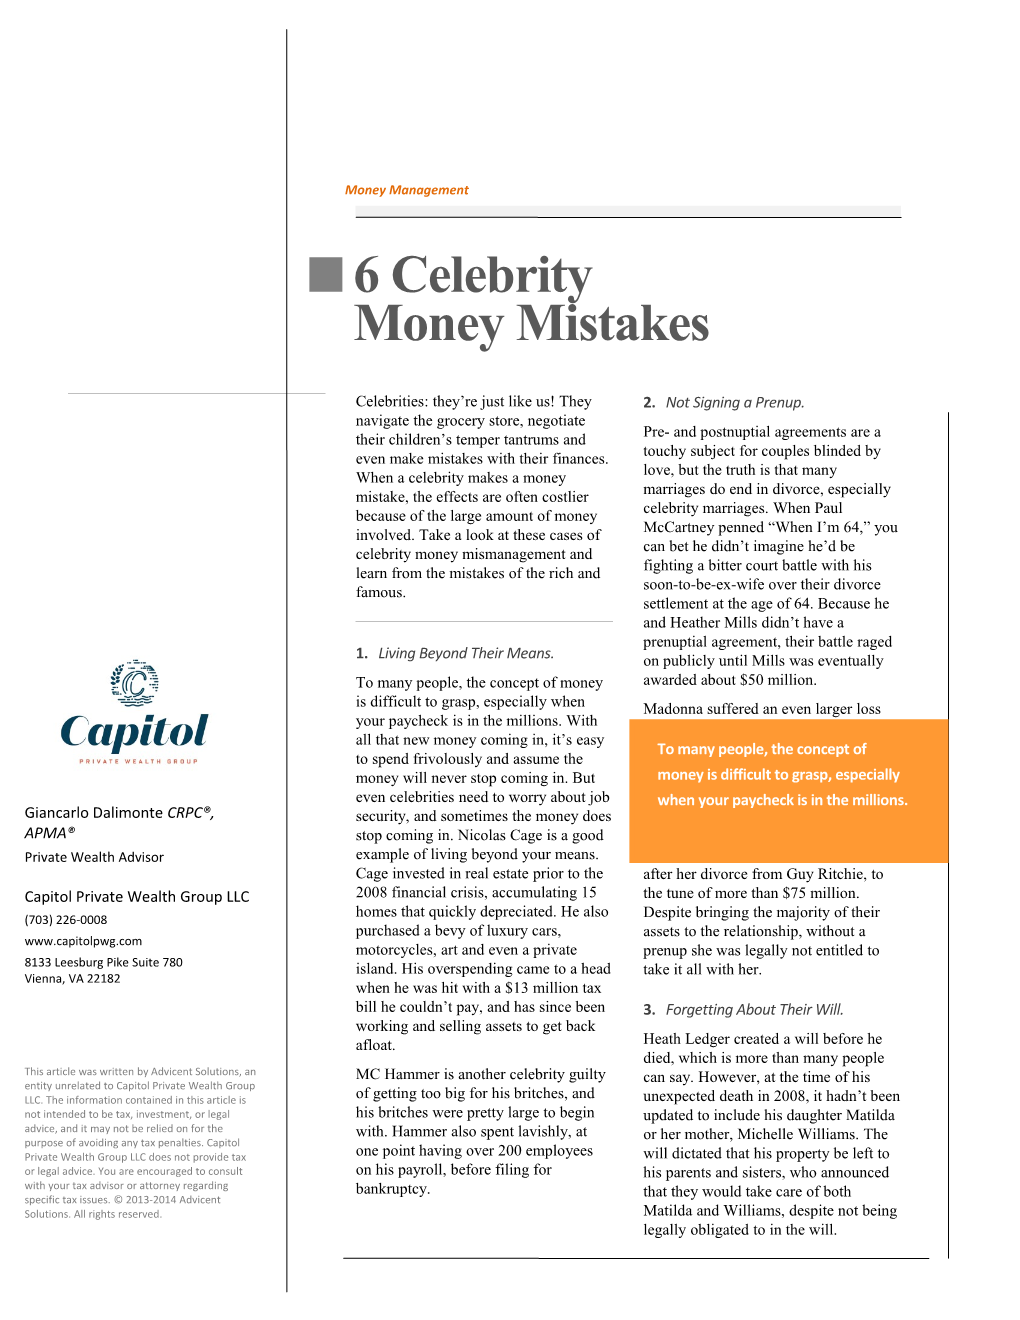 6 Celebrity Money Mistakes